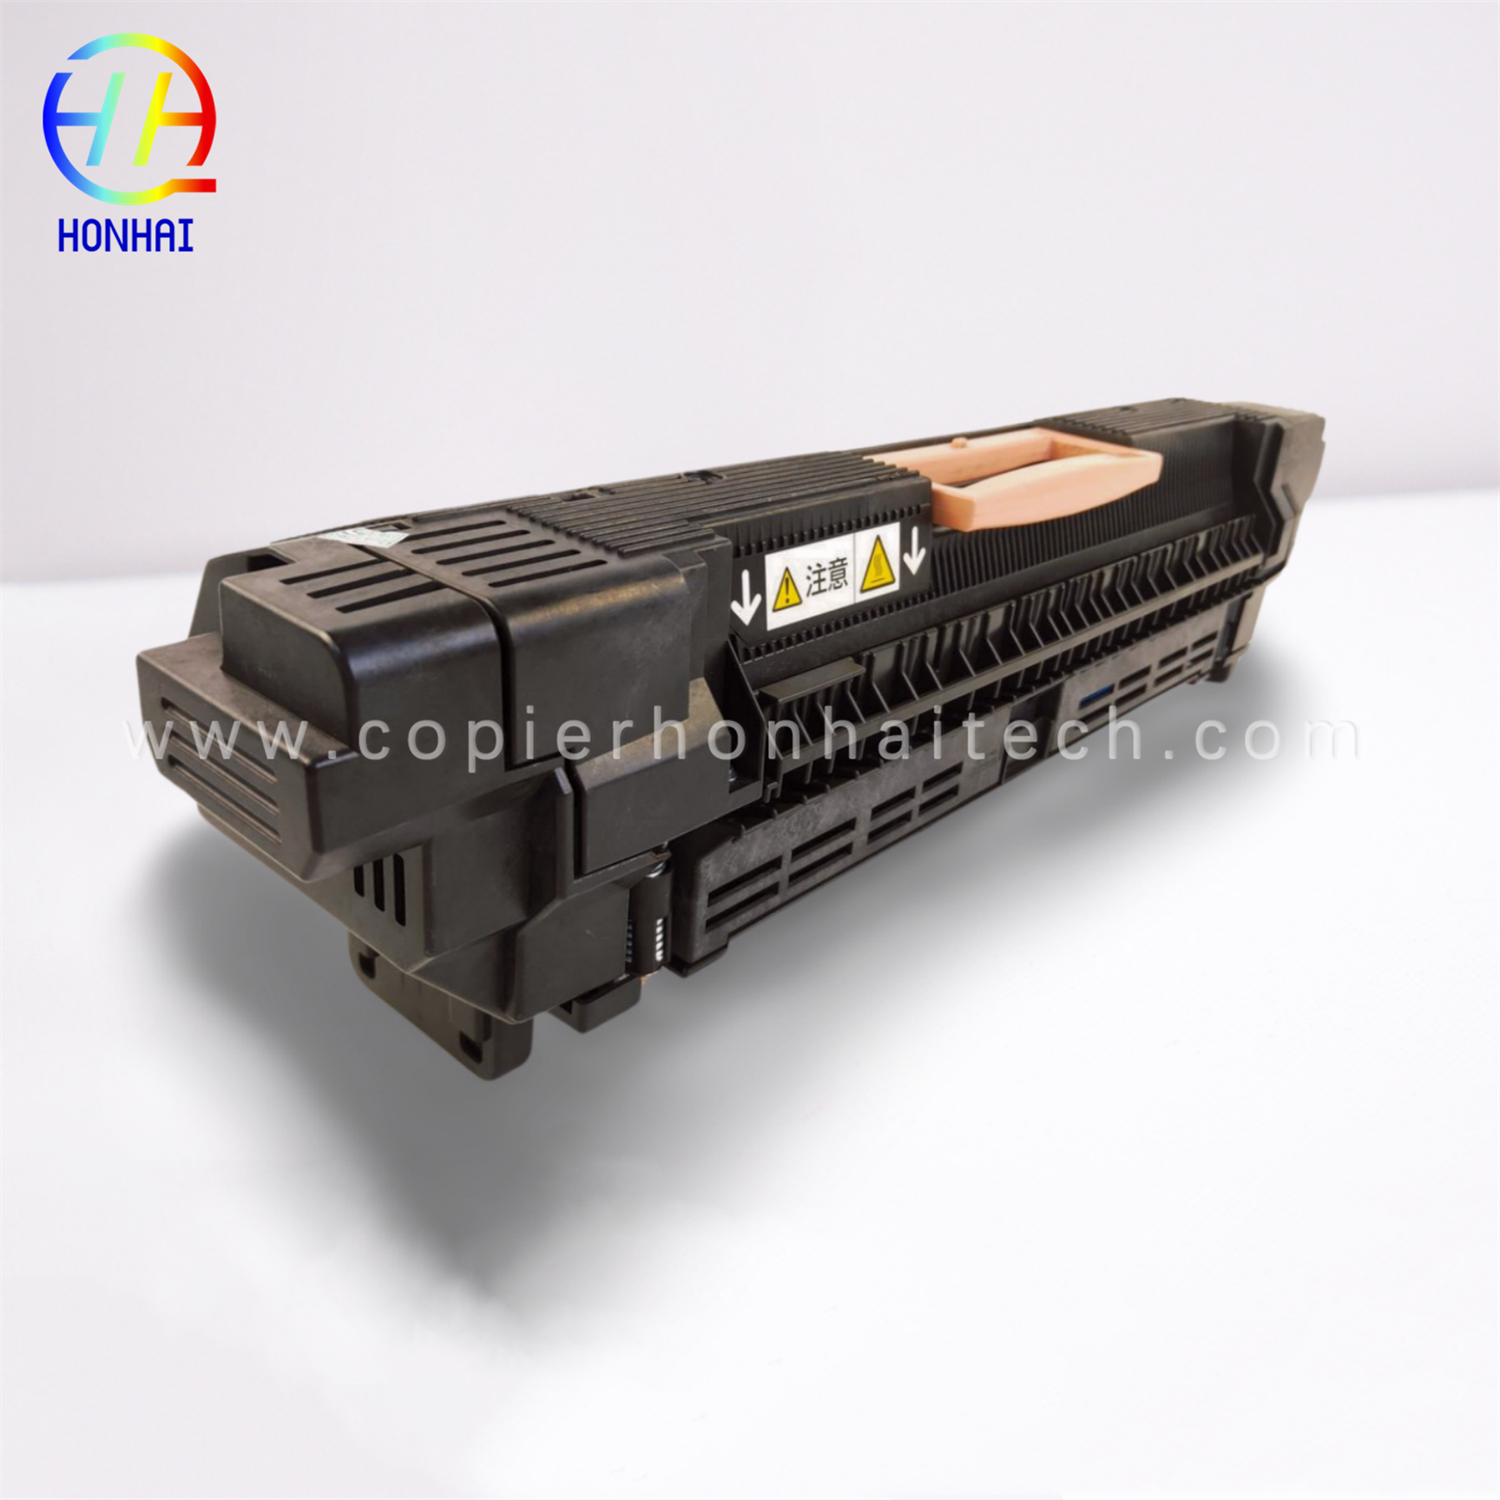 https://www.copierhonhaitech.com/fuser-cartridge-assy-220v-voor-xerox-color-550-560-570-c60-c70-008r13065-641s00649-product/